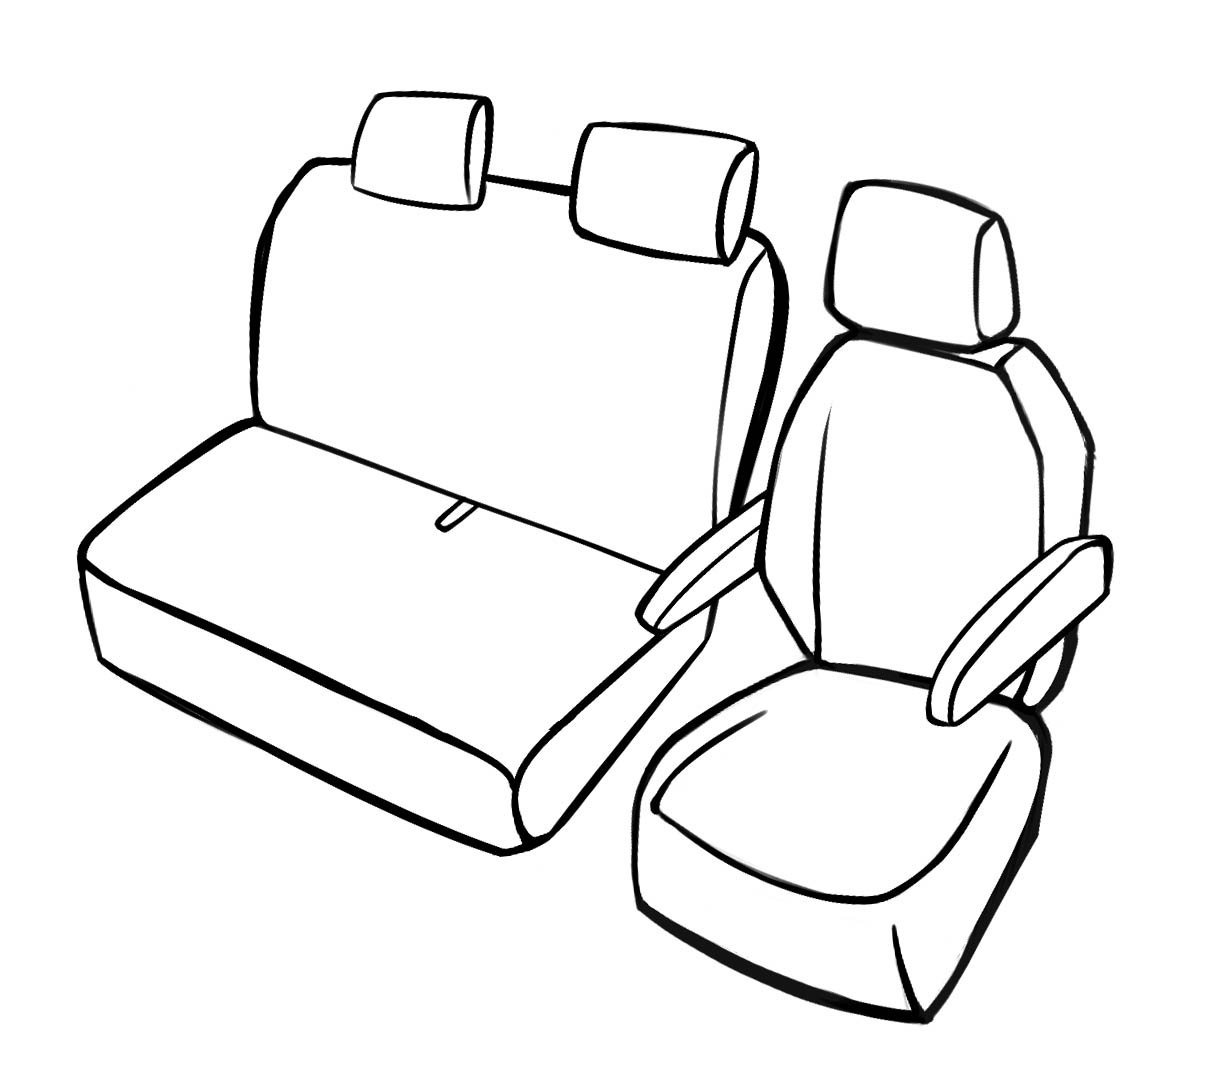 Premium Housse de siège pour VW Crafter 2016- auj., 1 housse de siège simple avant + housse d'accoudoir, 1 couverture de banc double